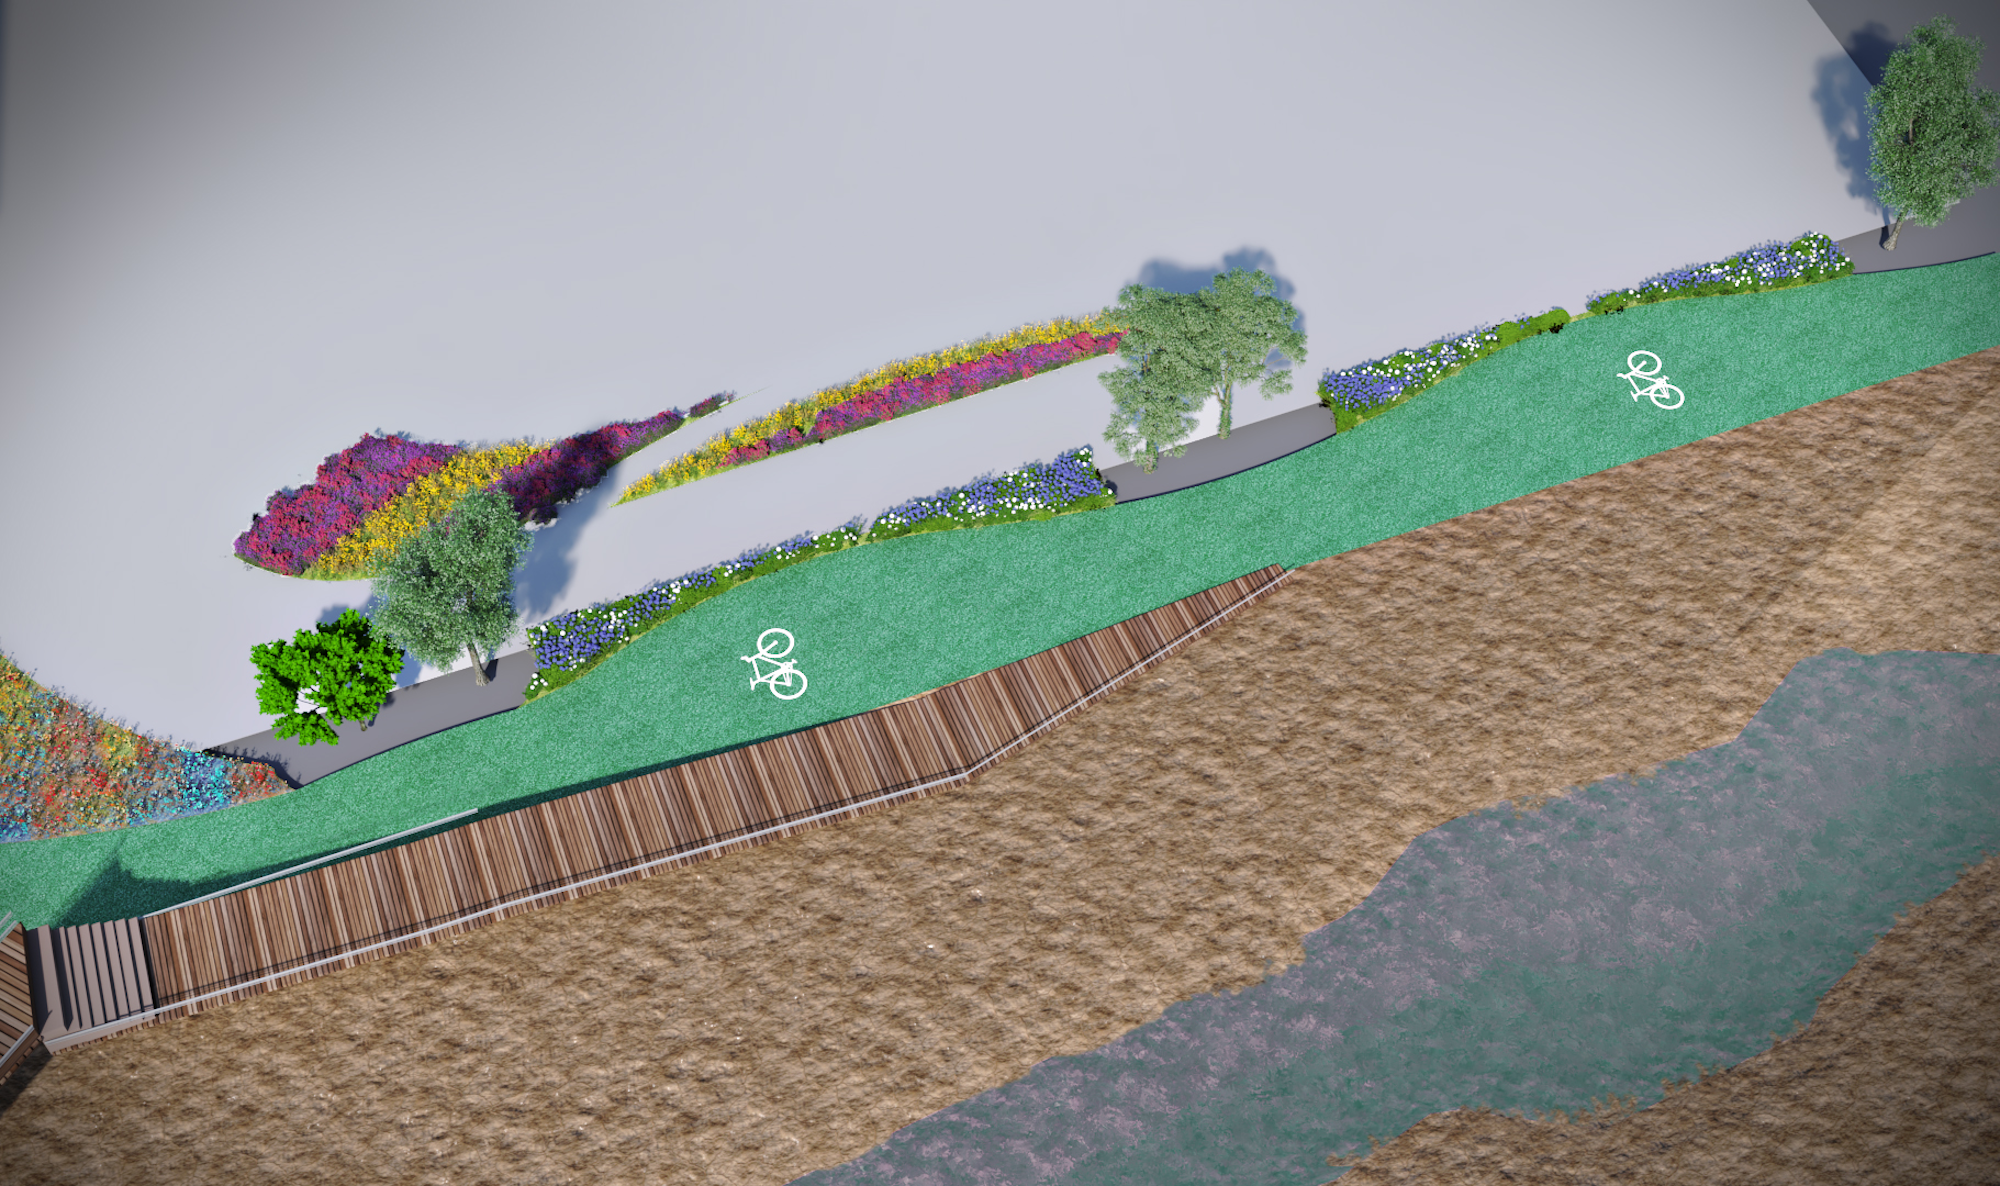 3D-Darstellung einer begrünten Fußgängerzone mit Sträuchern, Bäumen und einem Radweg